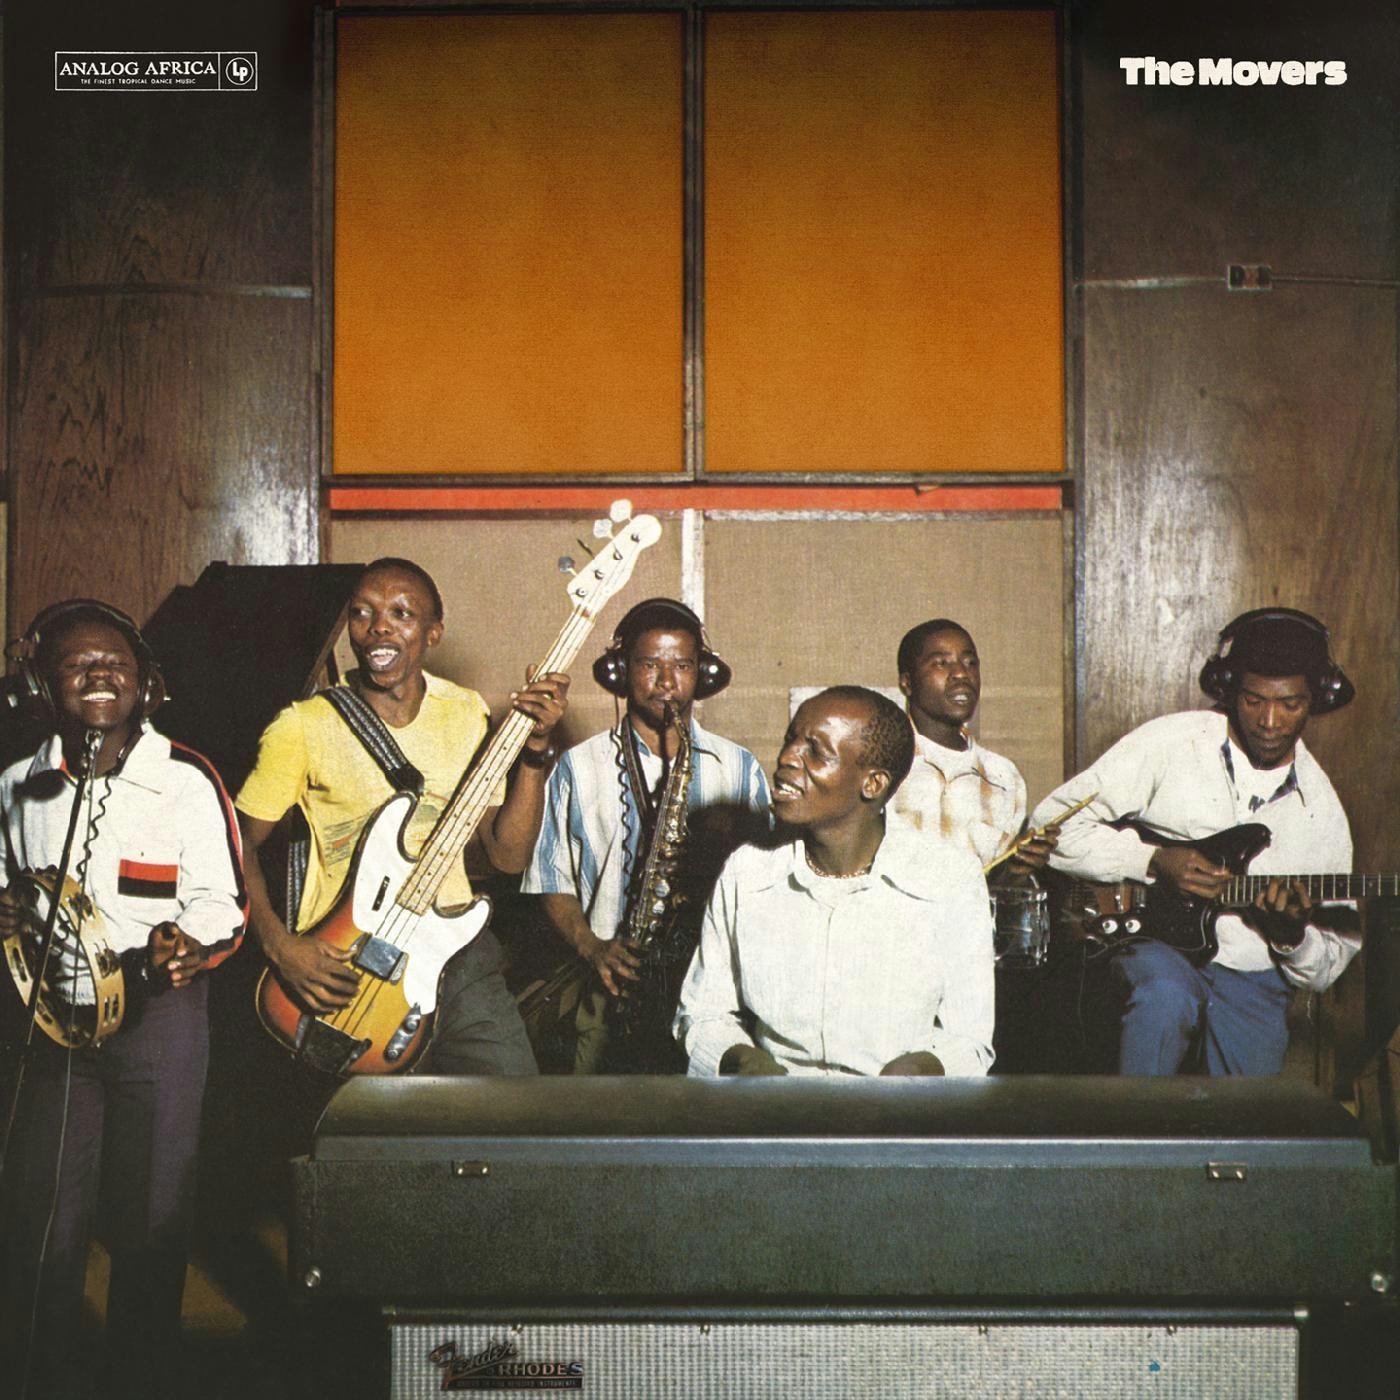 Album artwork for Album artwork for Vol. 1 - 1970-1976 (Analog Africa No.35) by The Movers by Vol. 1 - 1970-1976 (Analog Africa No.35) - The Movers